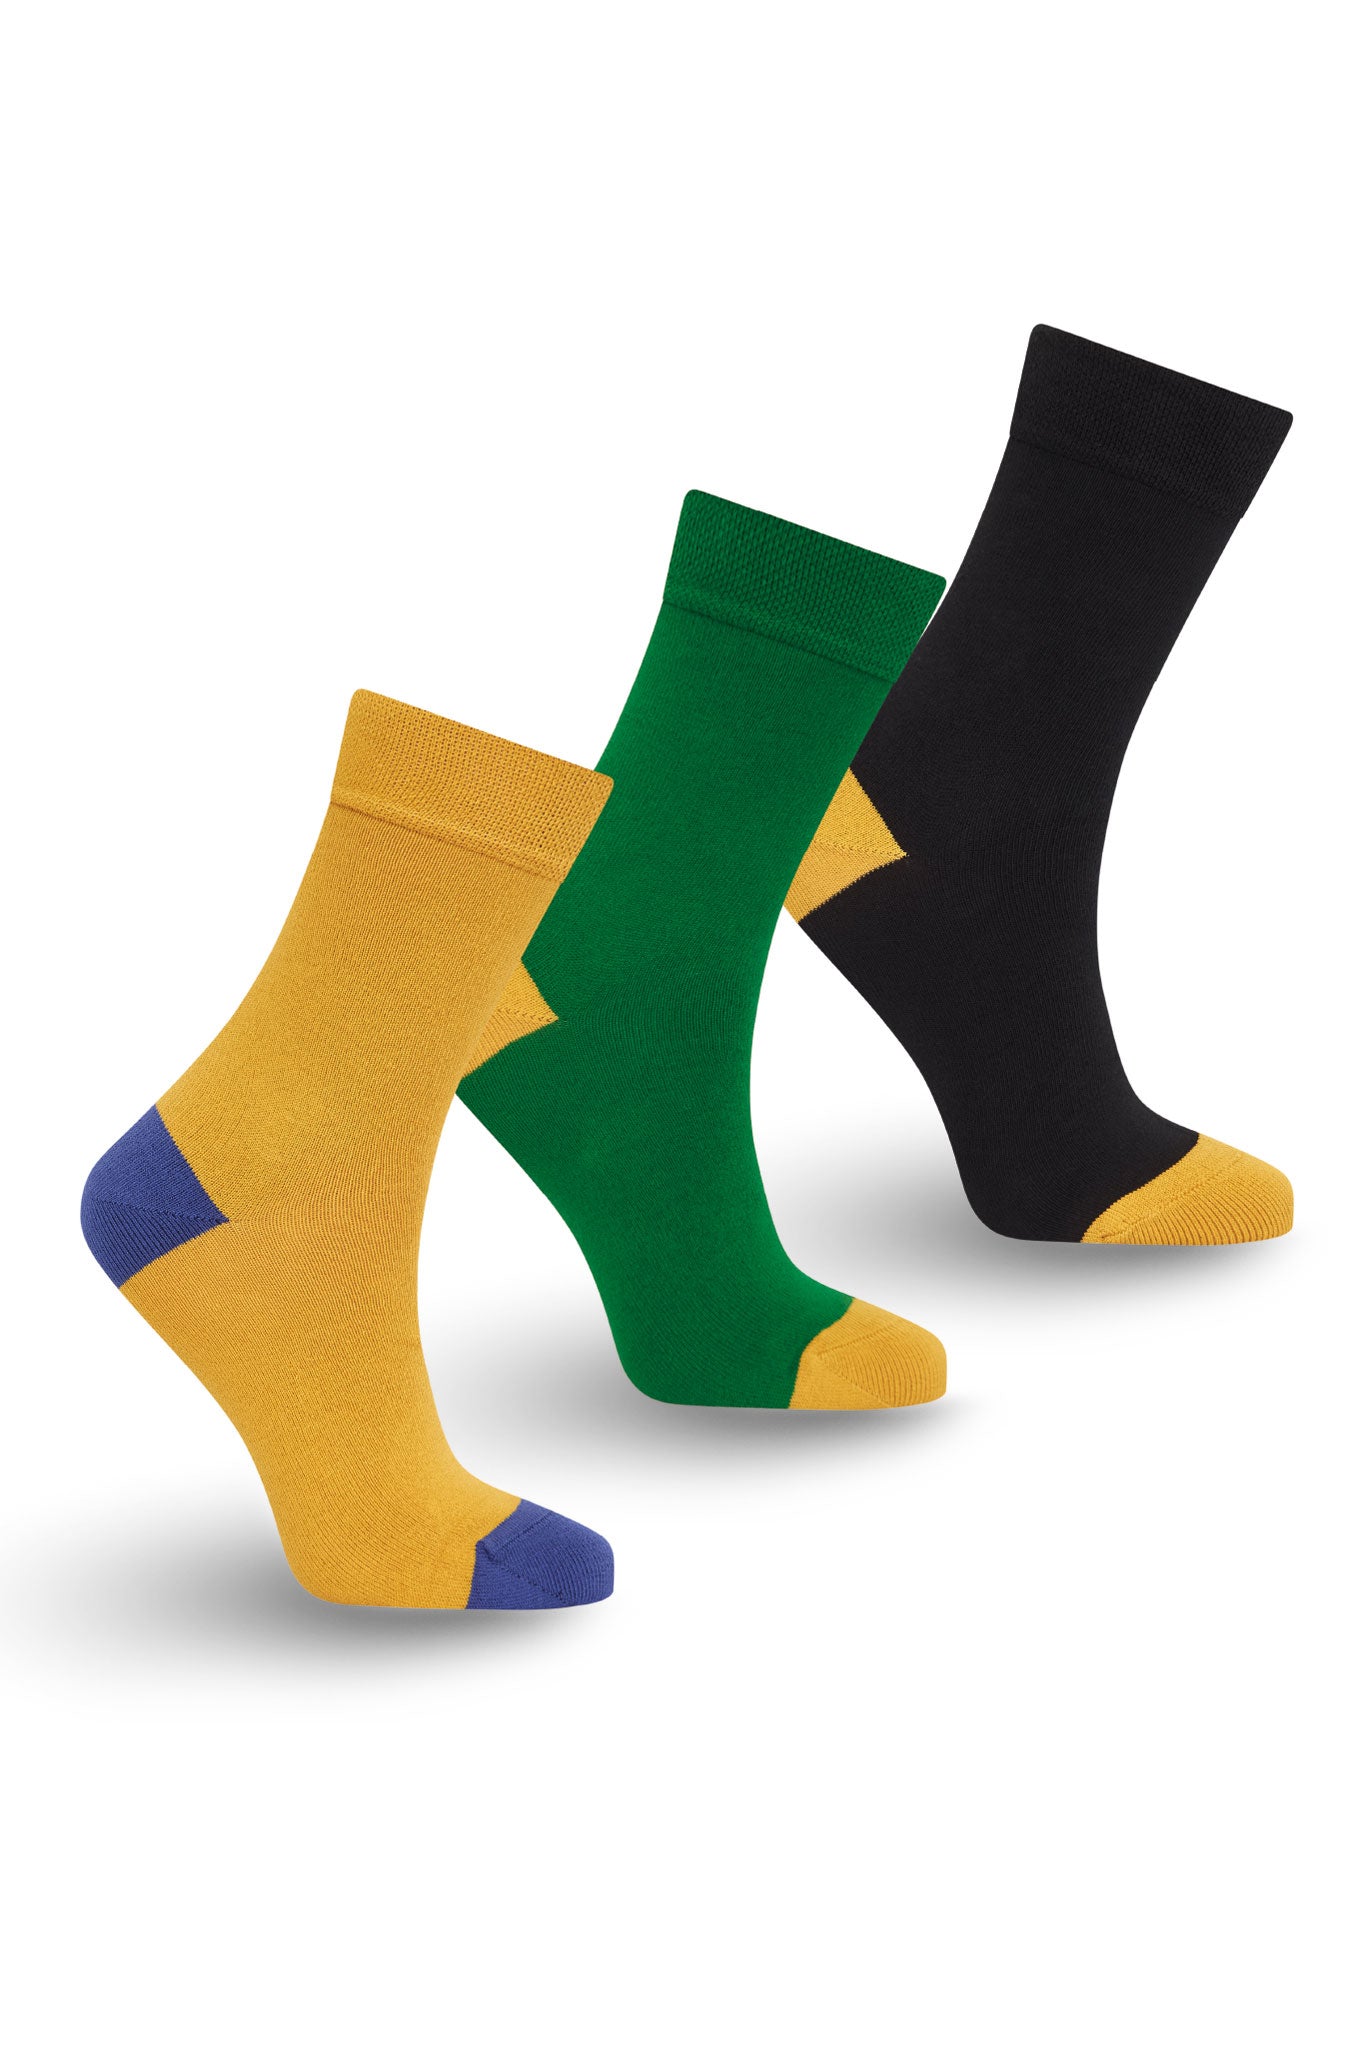 PUNCHY Box Set (x3 pairs) - GOTS Organic Cotton Socks Black/Green/Gold, EUR 31-43